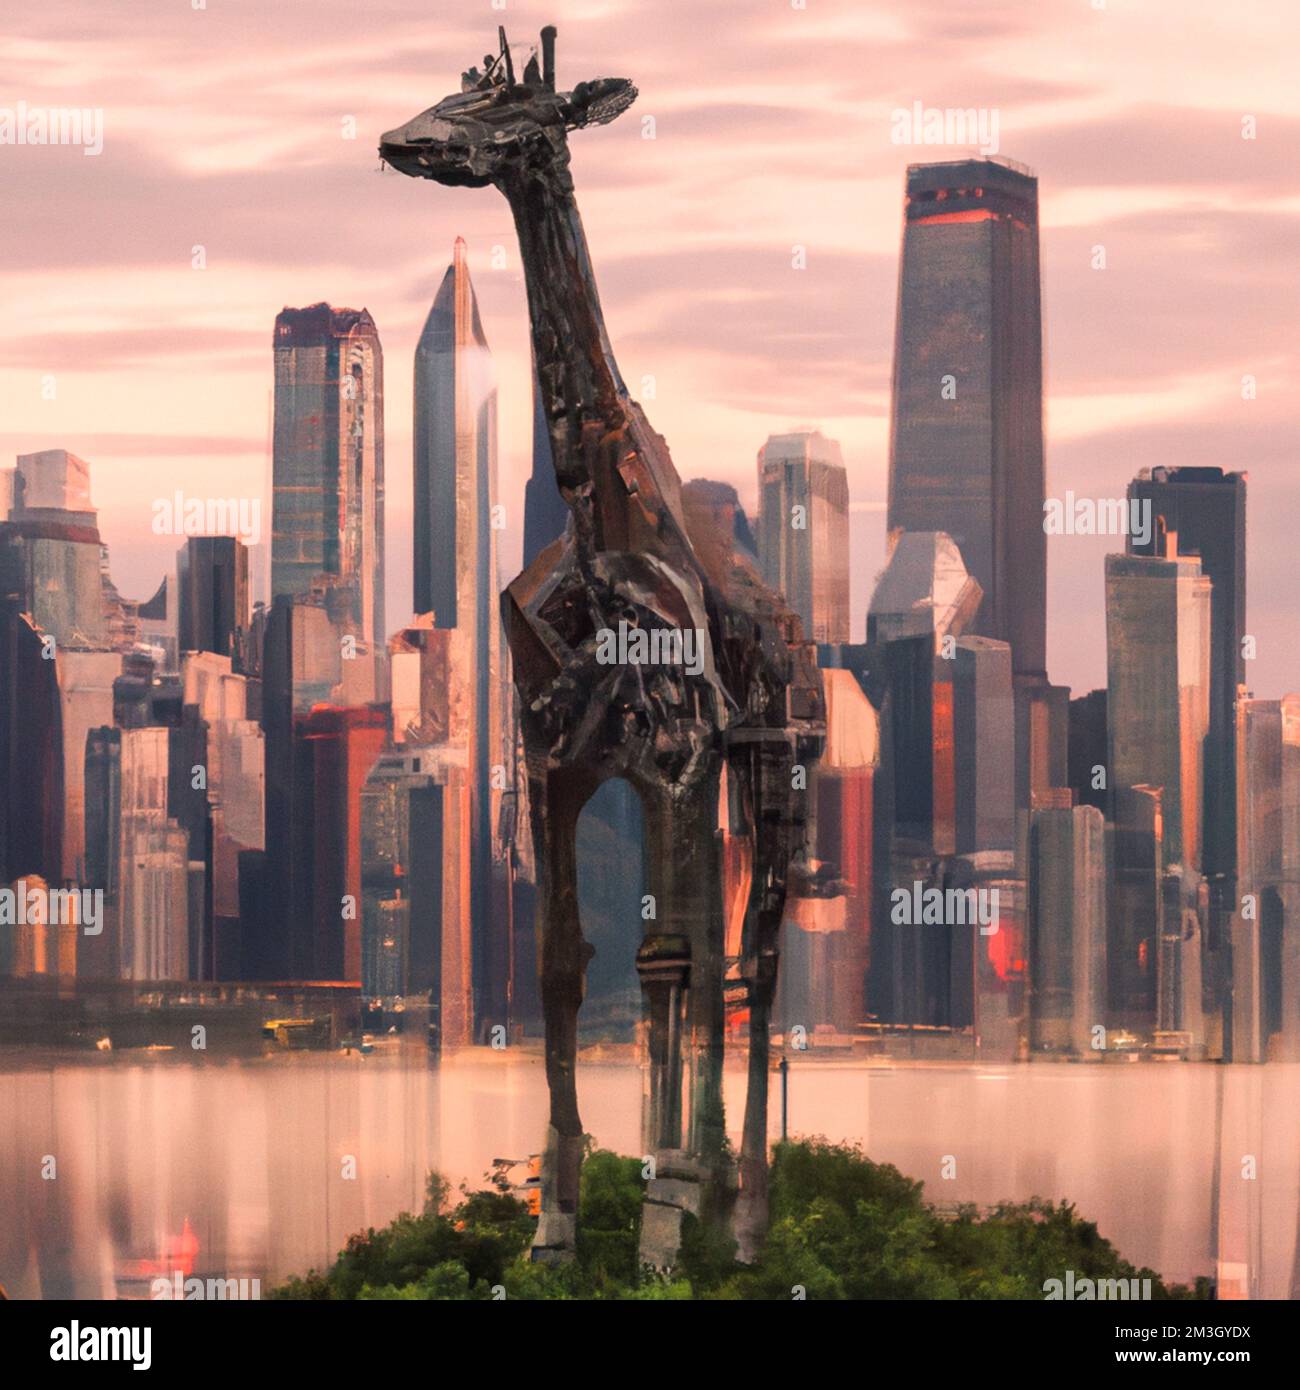 Francia, Parigi il 2022-12-12. Illustrazione digitale di un animale selvatico, qui una giraffa, in una grande città per illustrare le minacce alla biodiversità e alla fauna Foto Stock